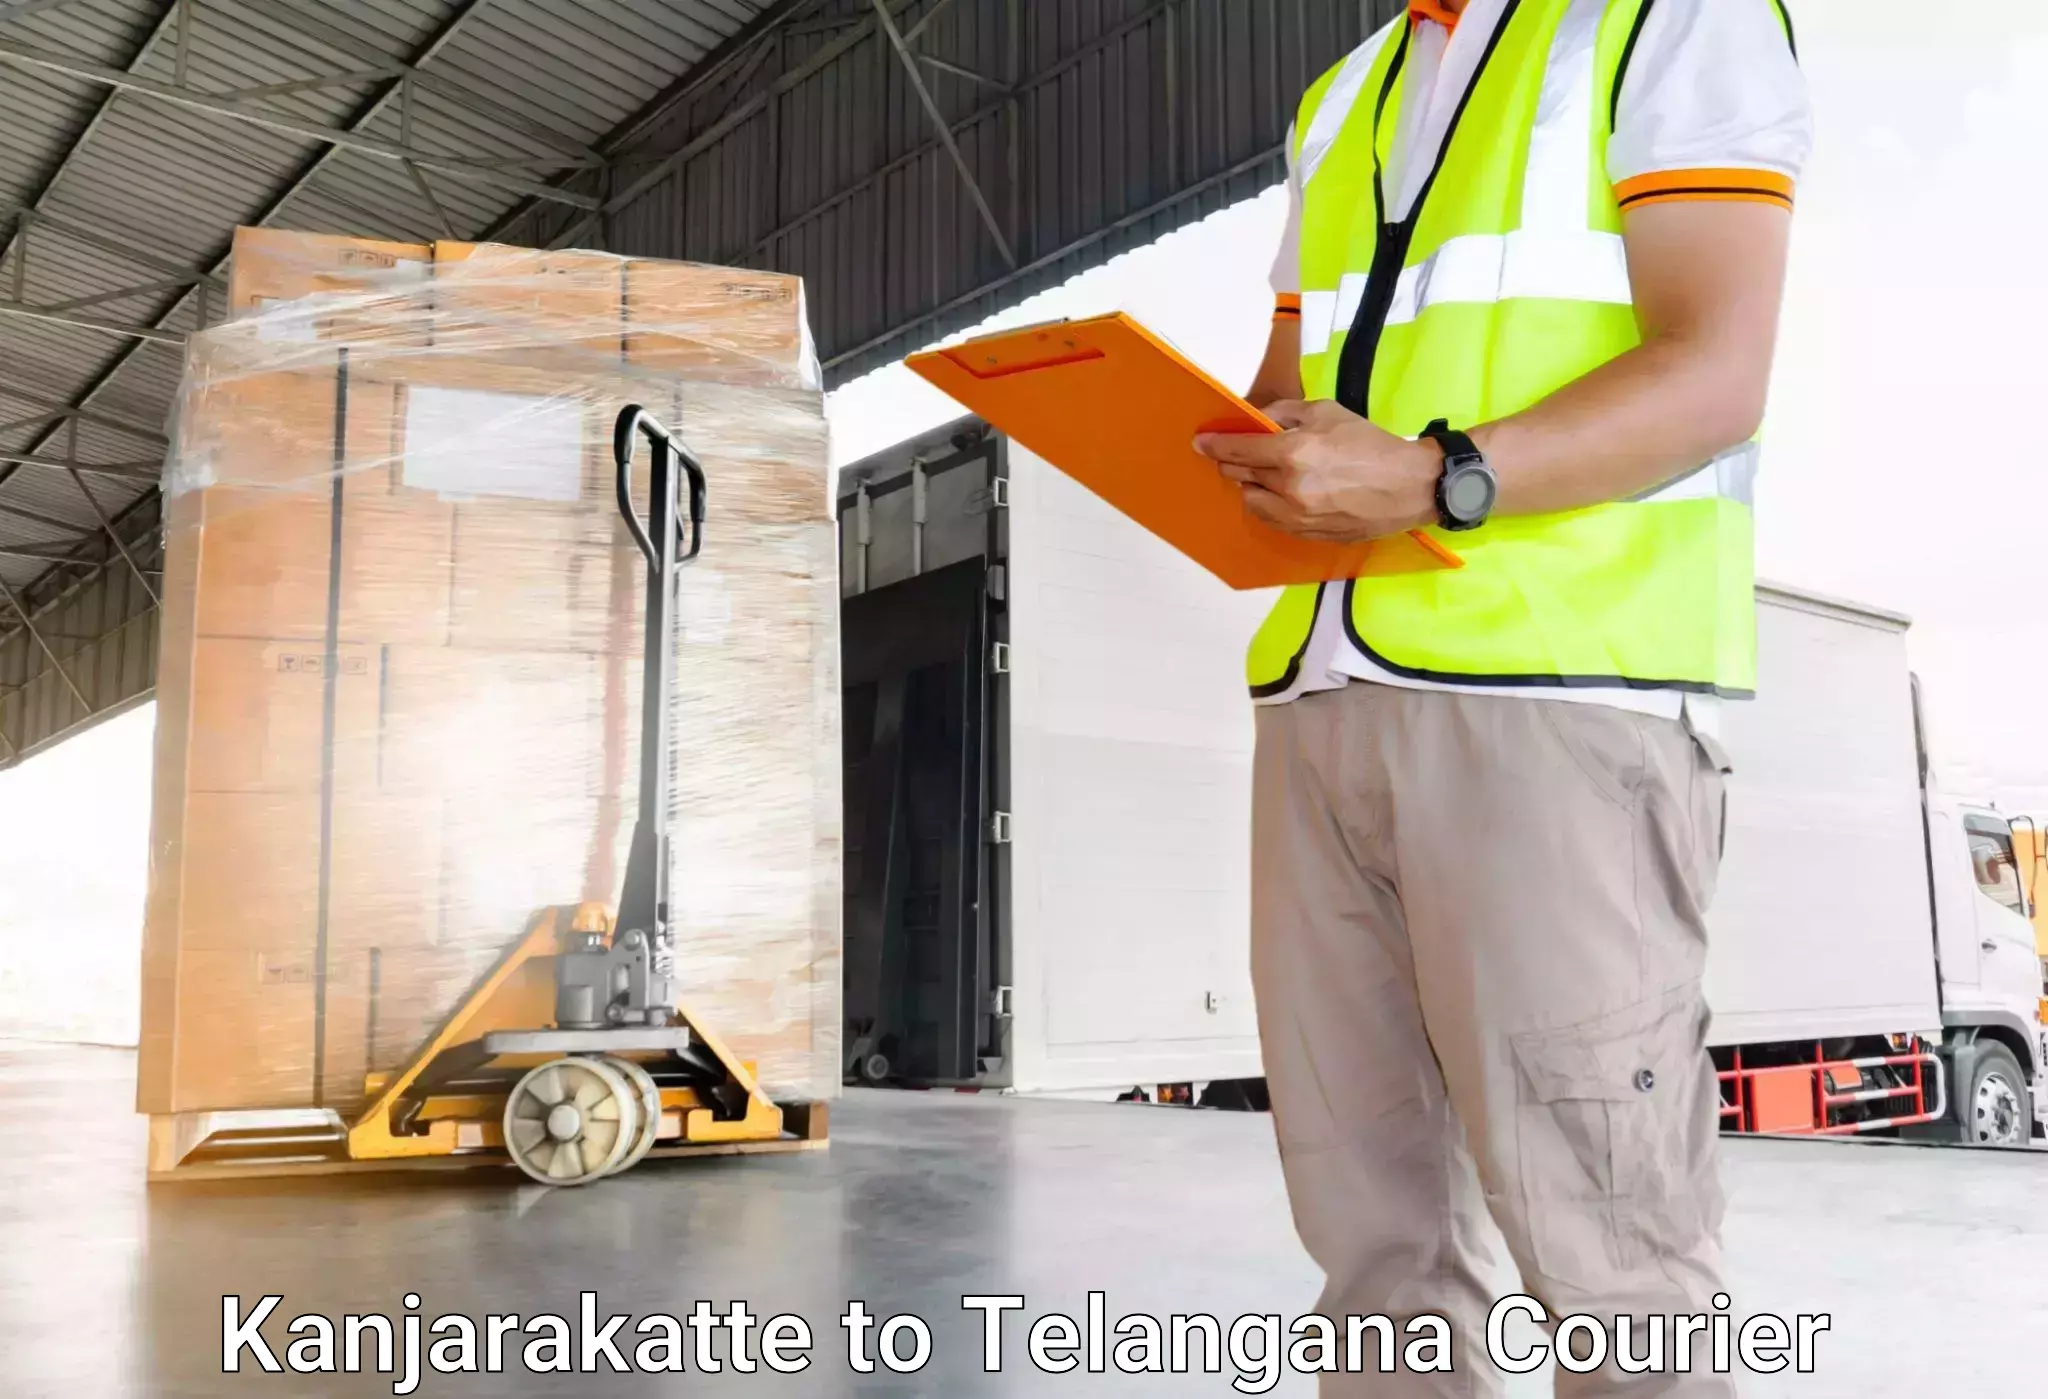 Luggage transport solutions Kanjarakatte to Telangana